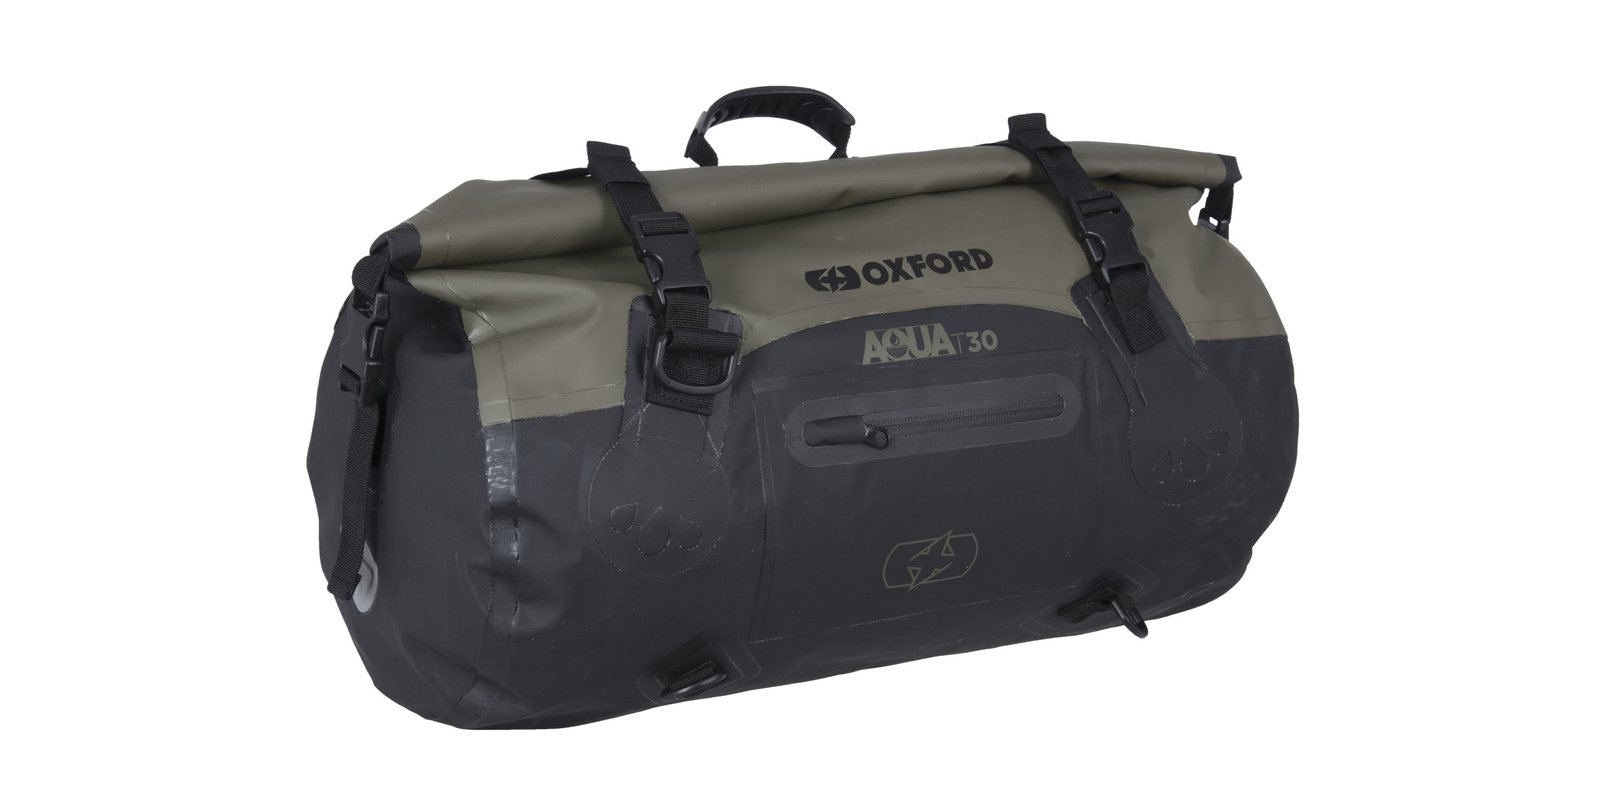 Obrázek produktu vodotěsný vak Aqua T-30 Roll Bag, OXFORD (khaki/černý, objem 30 l) OL401